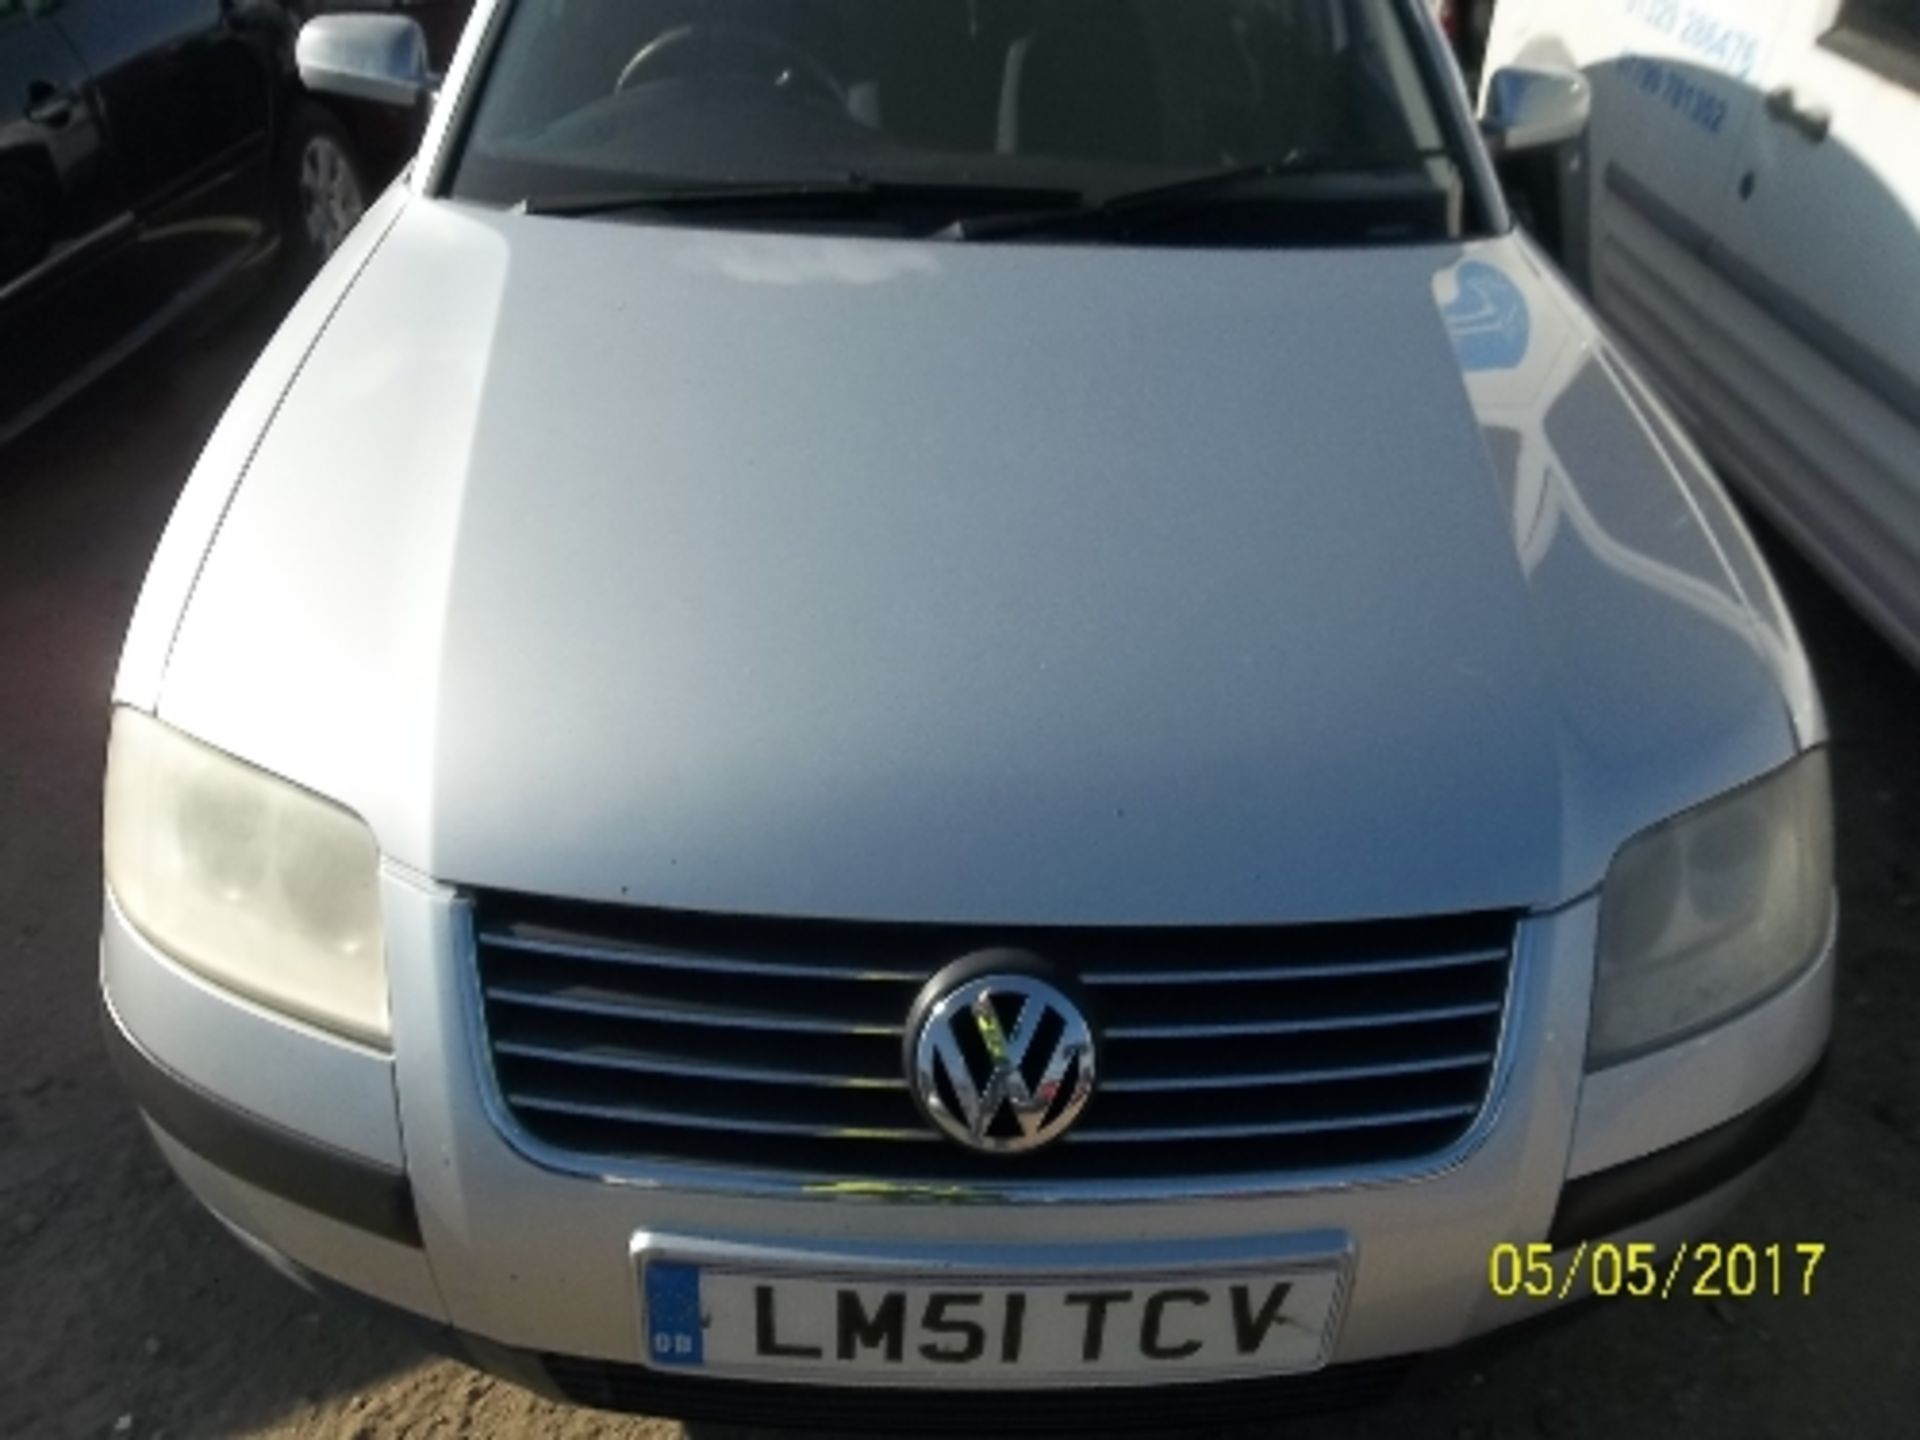 Volkswagen Passat SE TDI - LM51 TCV Date of registration: 12.12.2001 1896cc, diesel, manual,